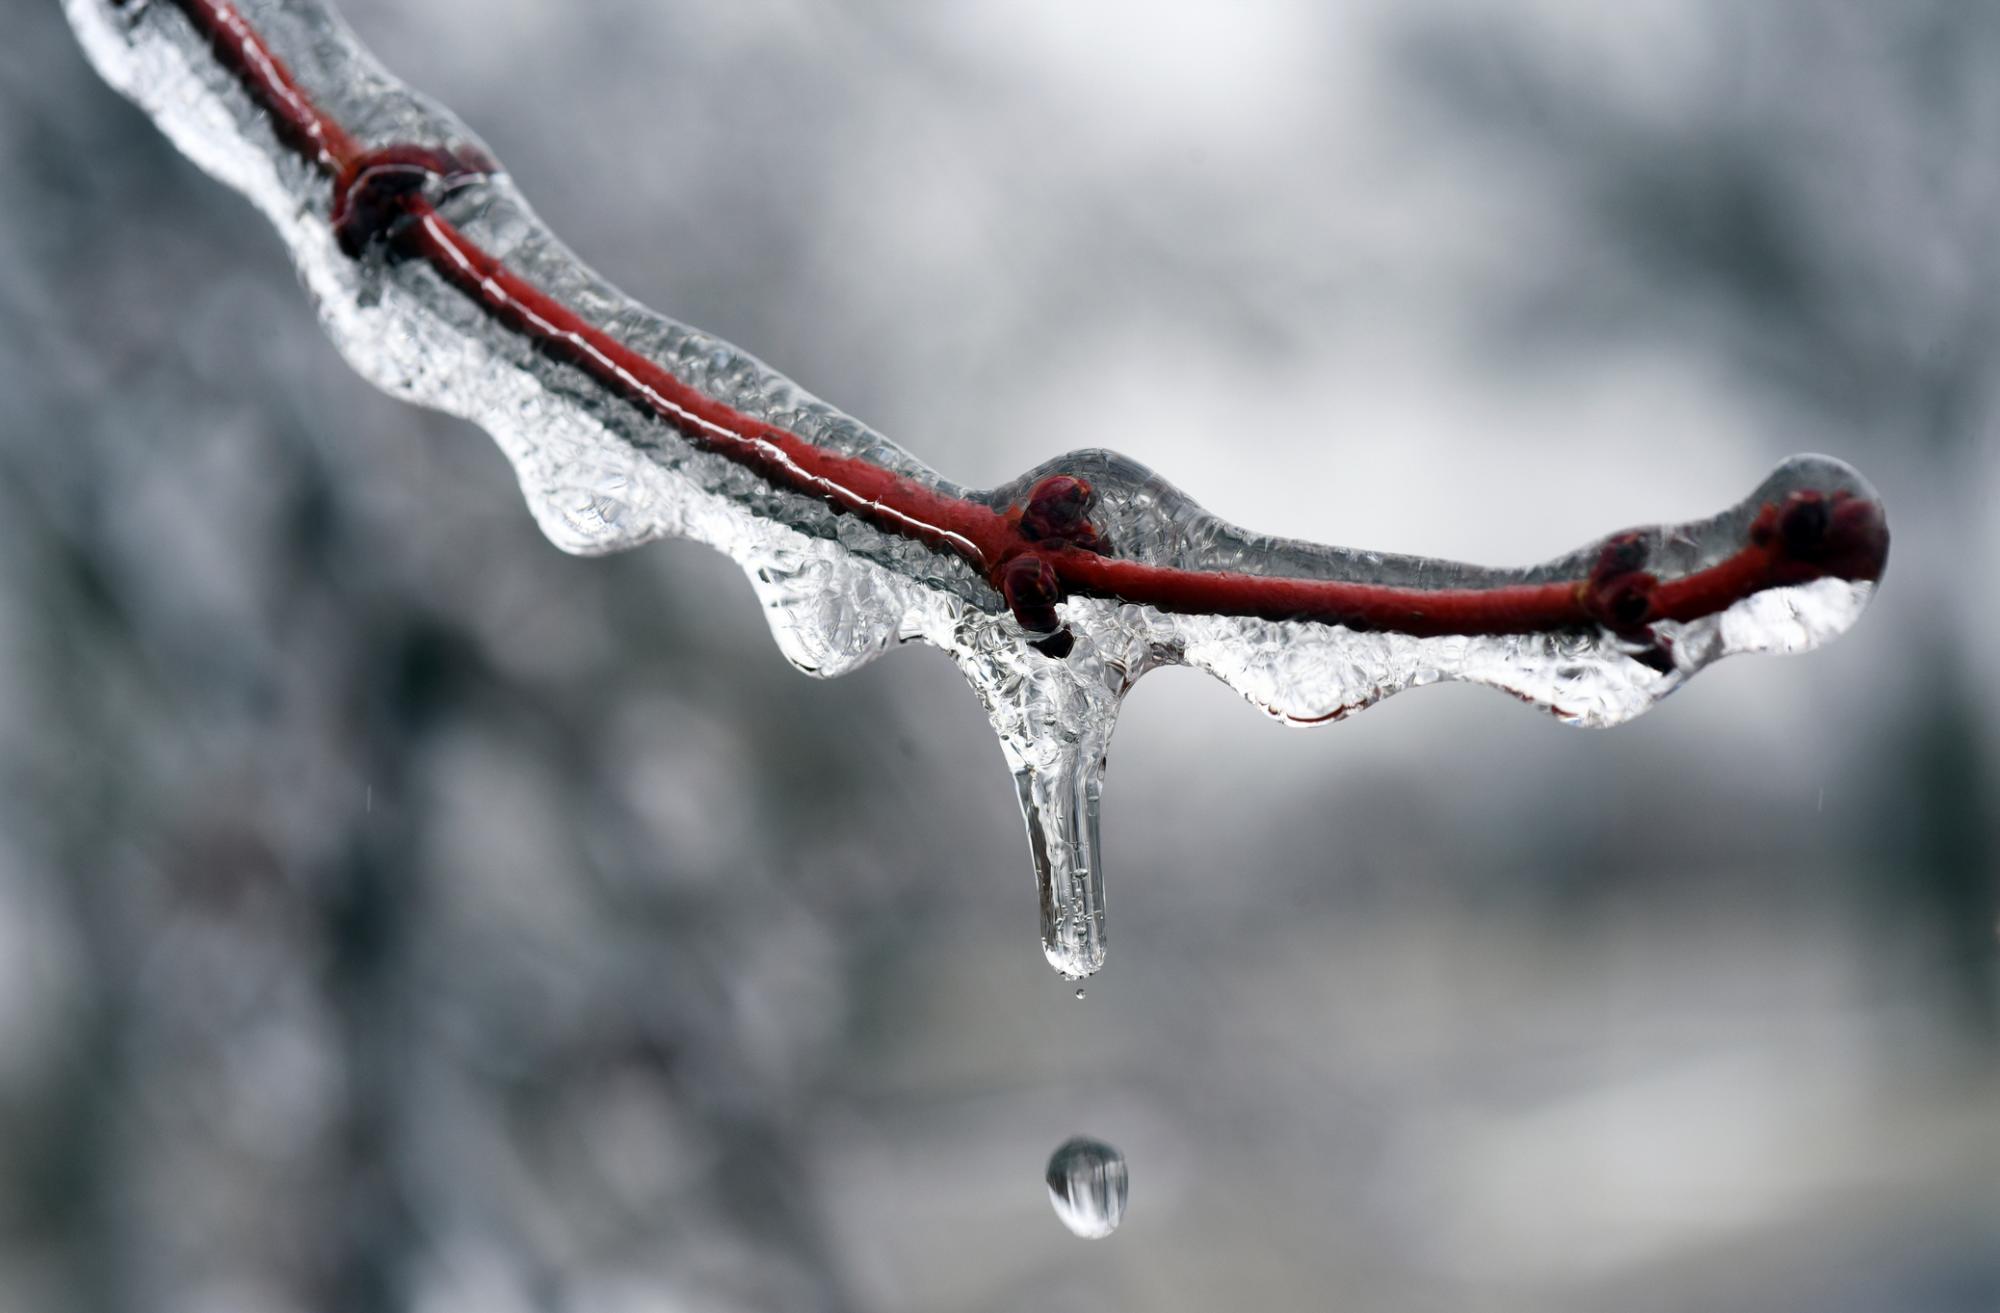 El agua gotea de una rama de un árbol congelado el martes, 12 de febrero de 2019, en St. Joseph, Michigan. La lluvia helada dejó a las carreteras, los árboles y las líneas eléctricas con una capa helada, haciendo que la conducción sea traicionera y cortando el suministro eléctrico a muchas personas en el suroeste de Michigan.